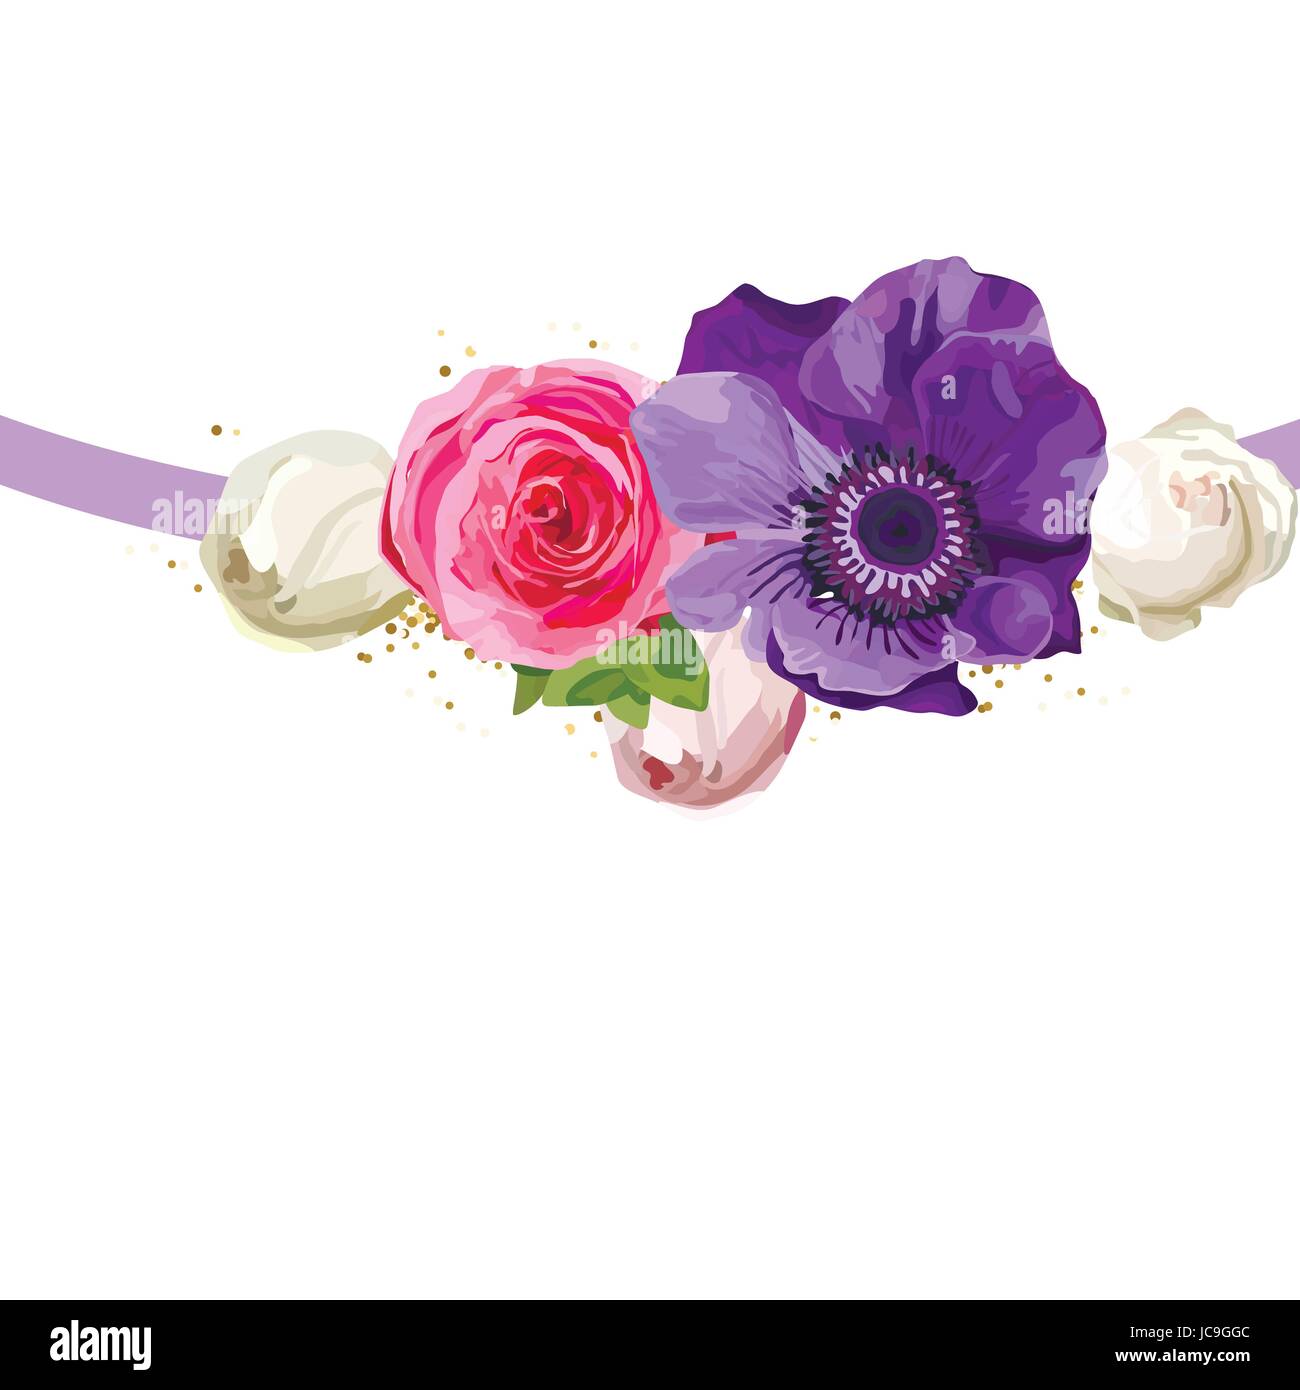 Helle Blume Blumen rosa Rose Anemone schönen schönen Frühling Sommer Bouquet Vektor-Illustration verlässt. Moderne quadratische elegante Aquarell de Draufsicht Stock Vektor